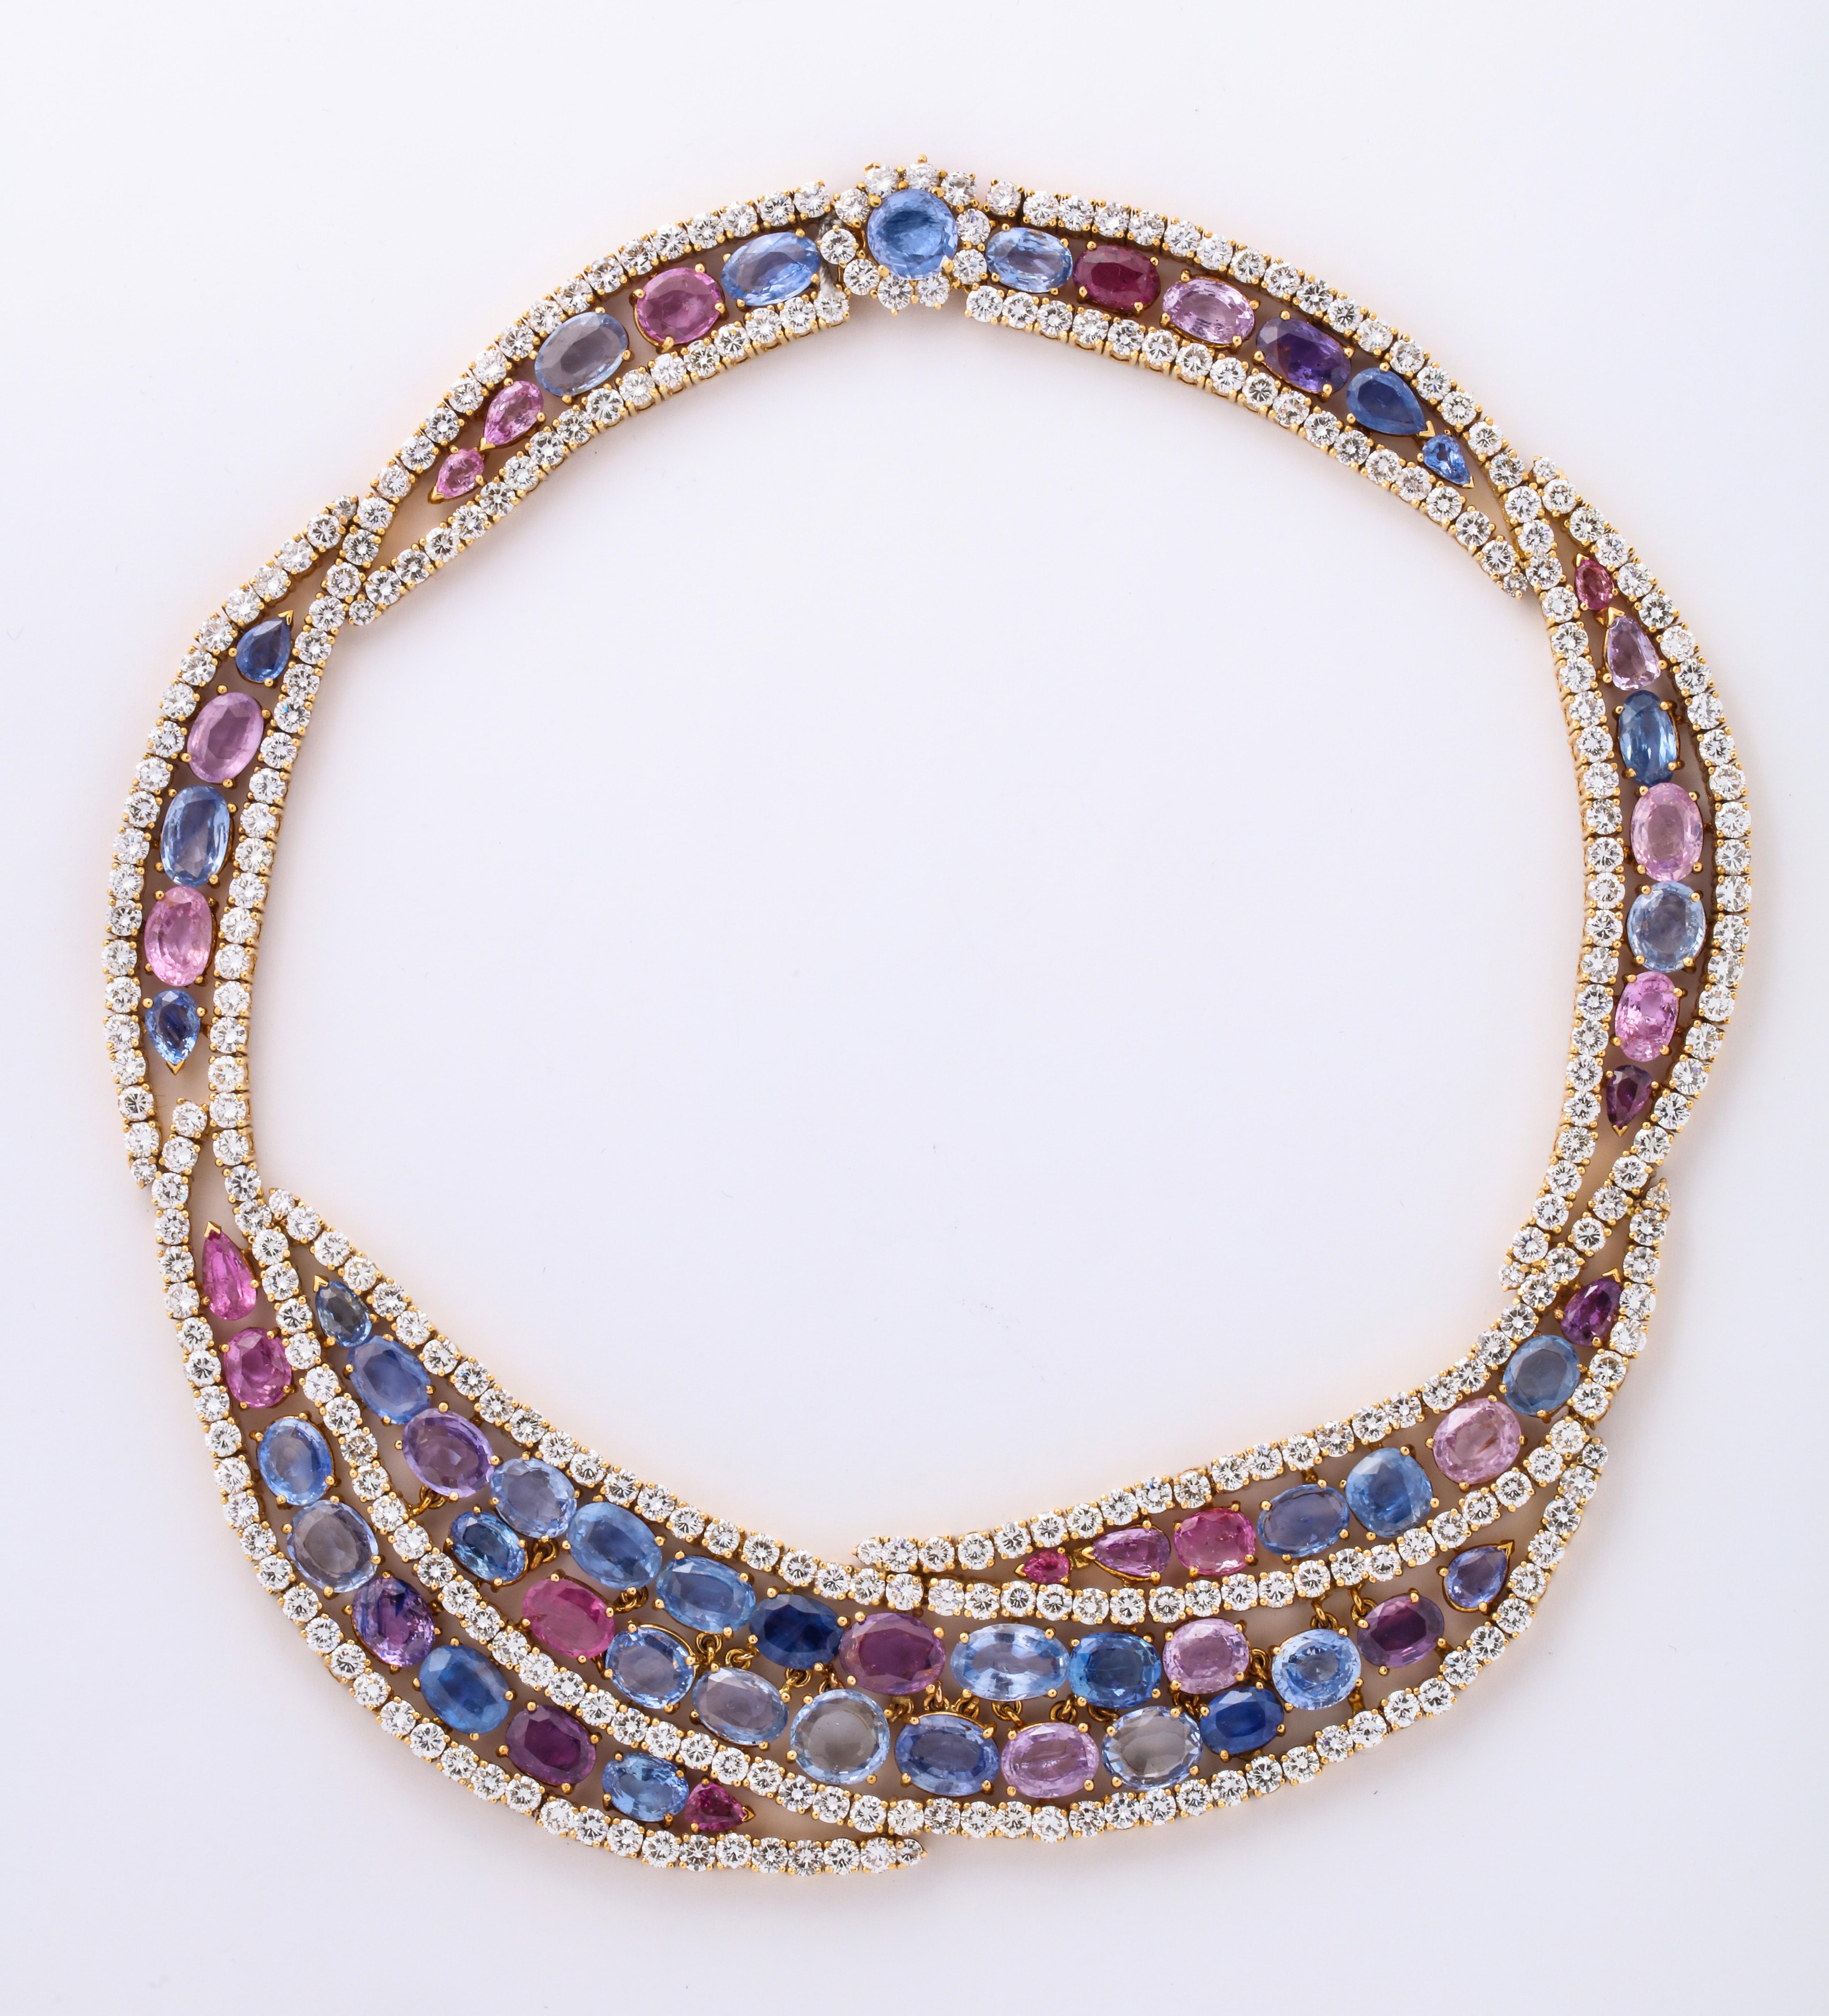 Diese atemberaubende Halskette zeigt die breite Farbpalette, die Saphire haben können.  Blau oder rosa leuchten die Saphire am besten, wenn sie von Diamanten umgeben sind.

Etwa 108,21 Karat Saphire
und ca. 43,78 Karat Diamanten

Abgebildet auf